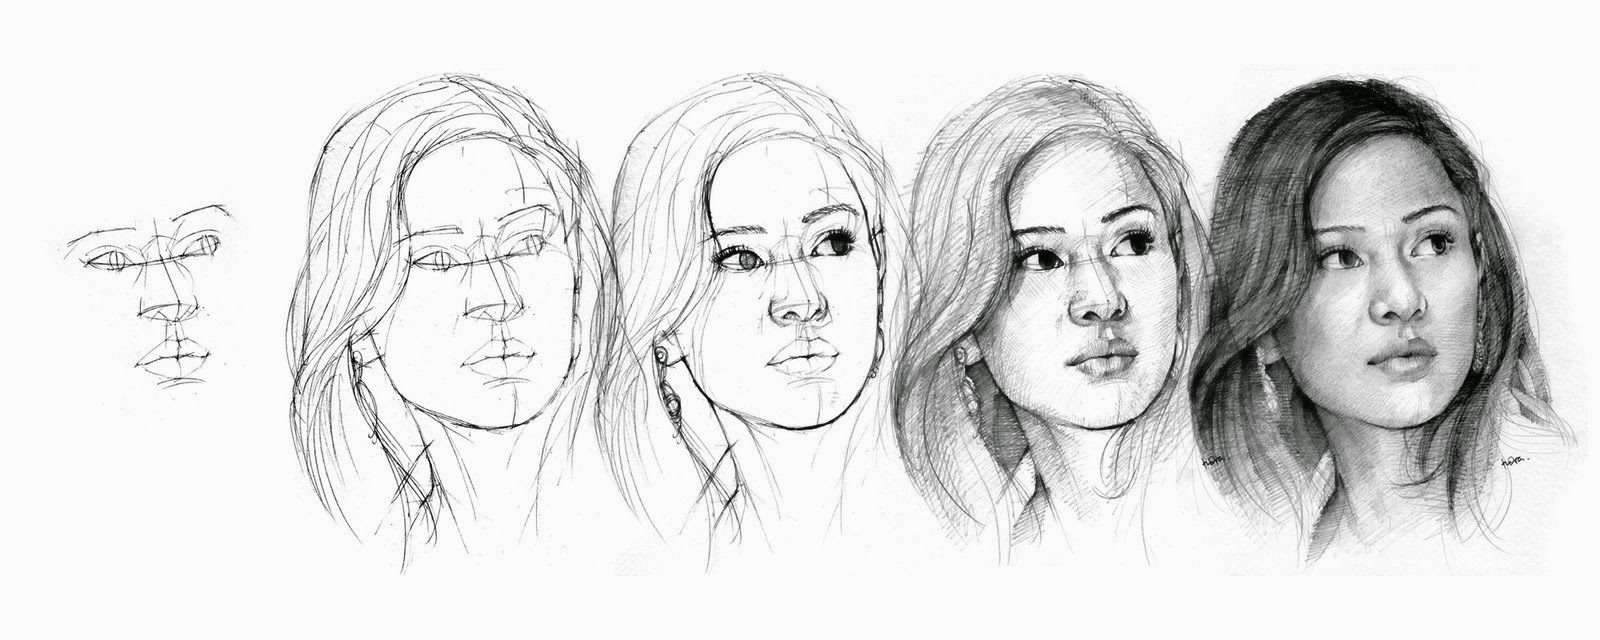  sketsa lukis karikatur wajah tips dan trik membuat 